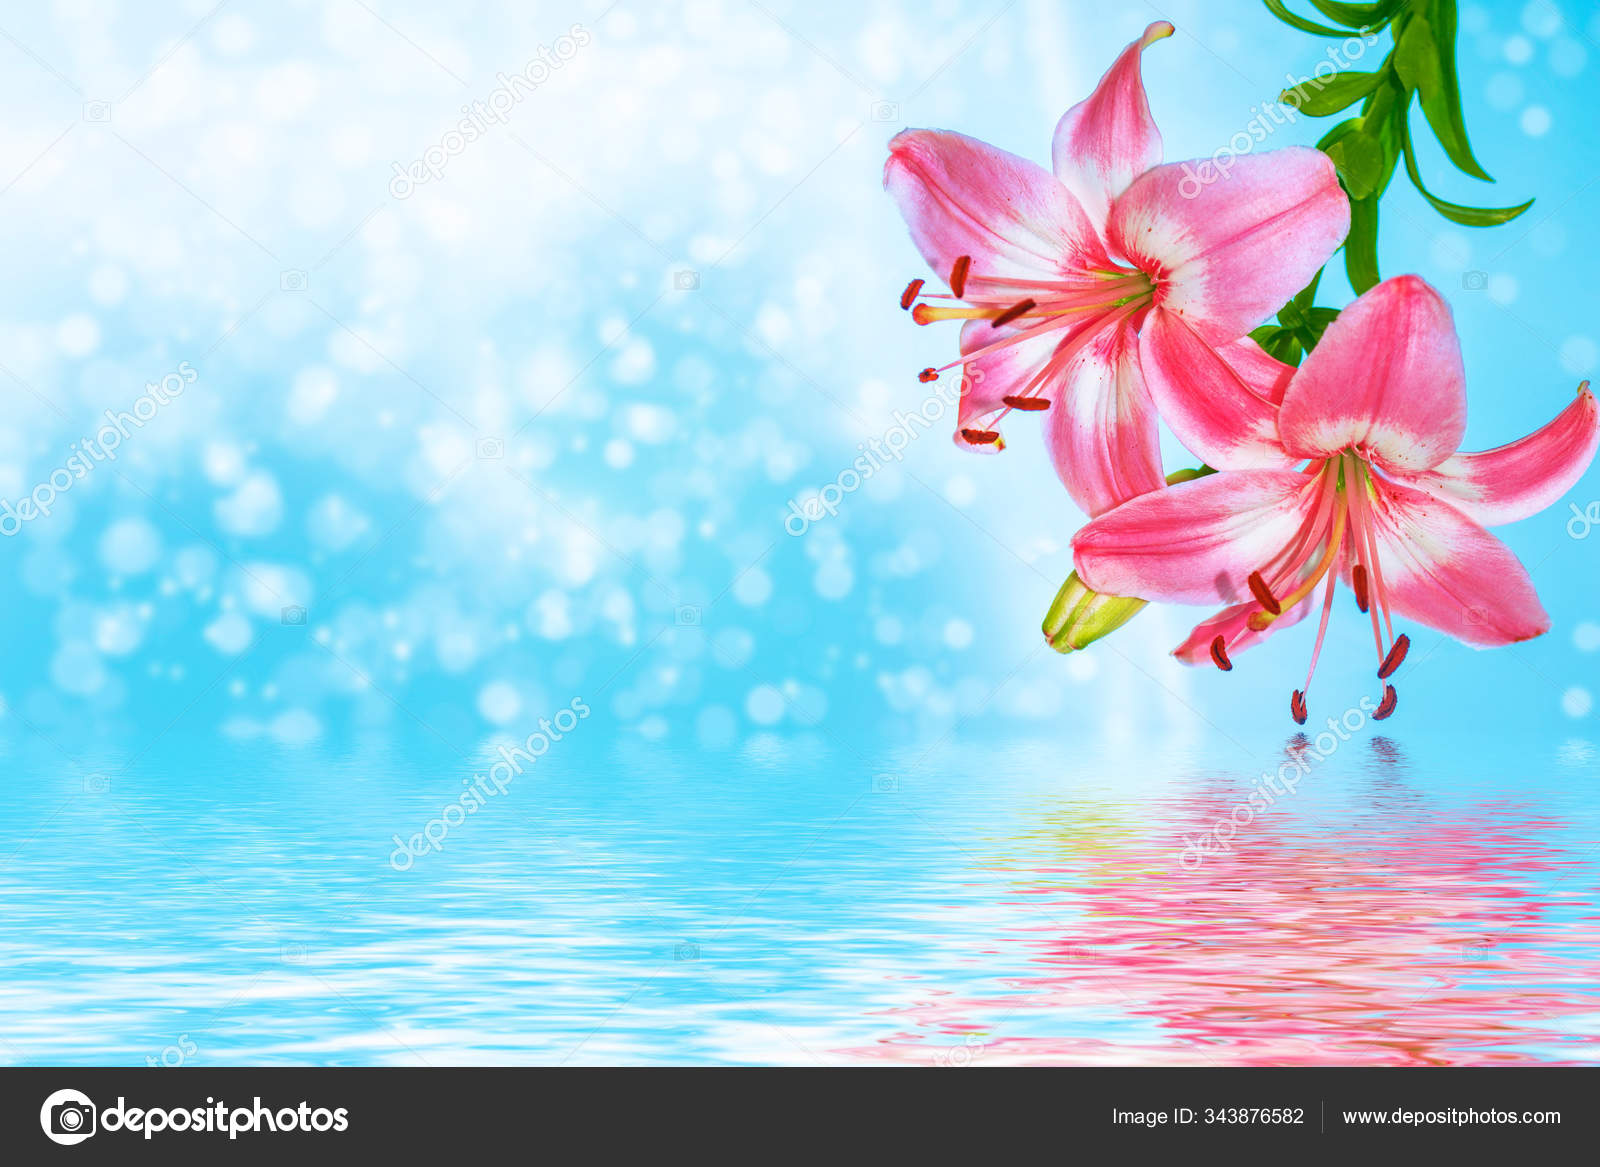 Coloridas flores hermosas lirio en el fondo del verano - Foto de stock  gratis © alenalihacheva #343876582